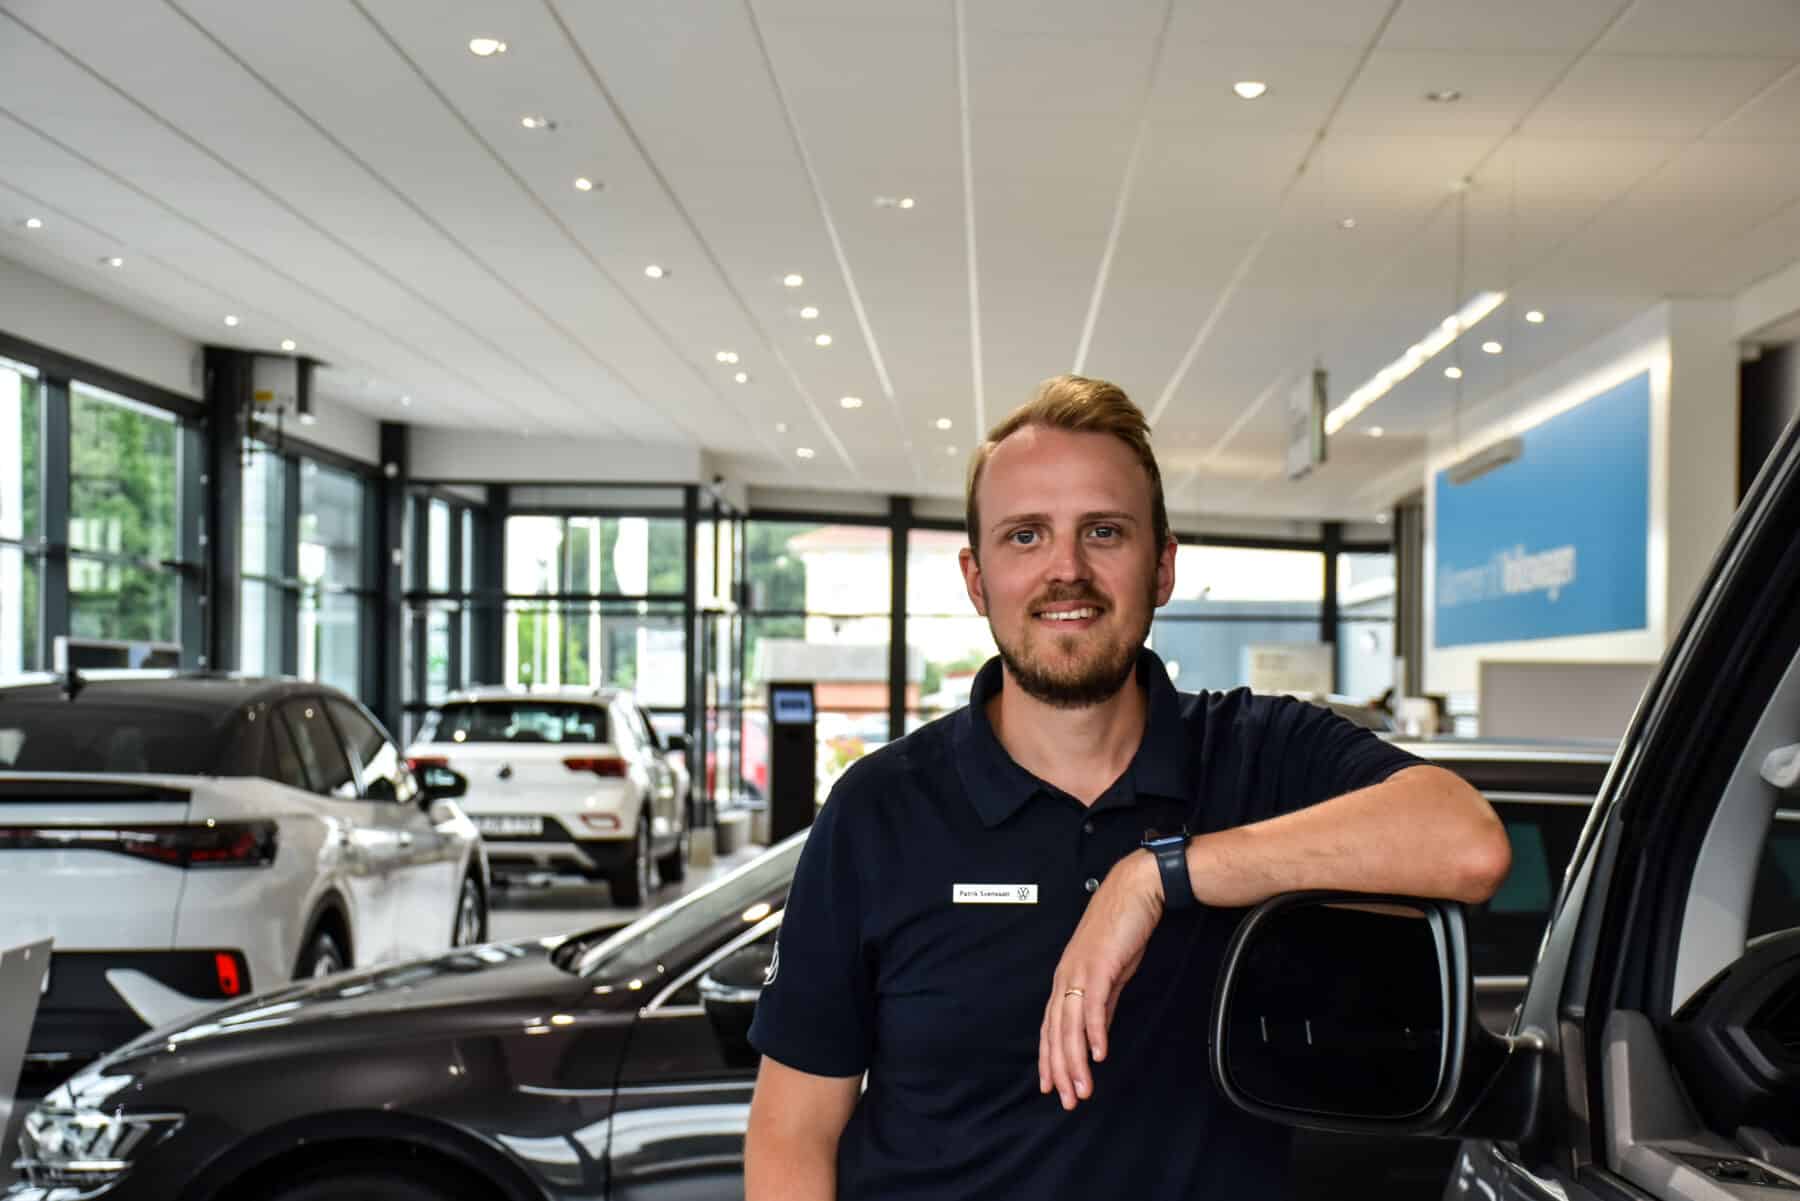 – Amaroken har varit fruktansvärt populär. Det är många som har väntat på att få byta ut sin gamla bil, säger Patrik Svensson, säljare hos Michelsens Bil i Ystad.